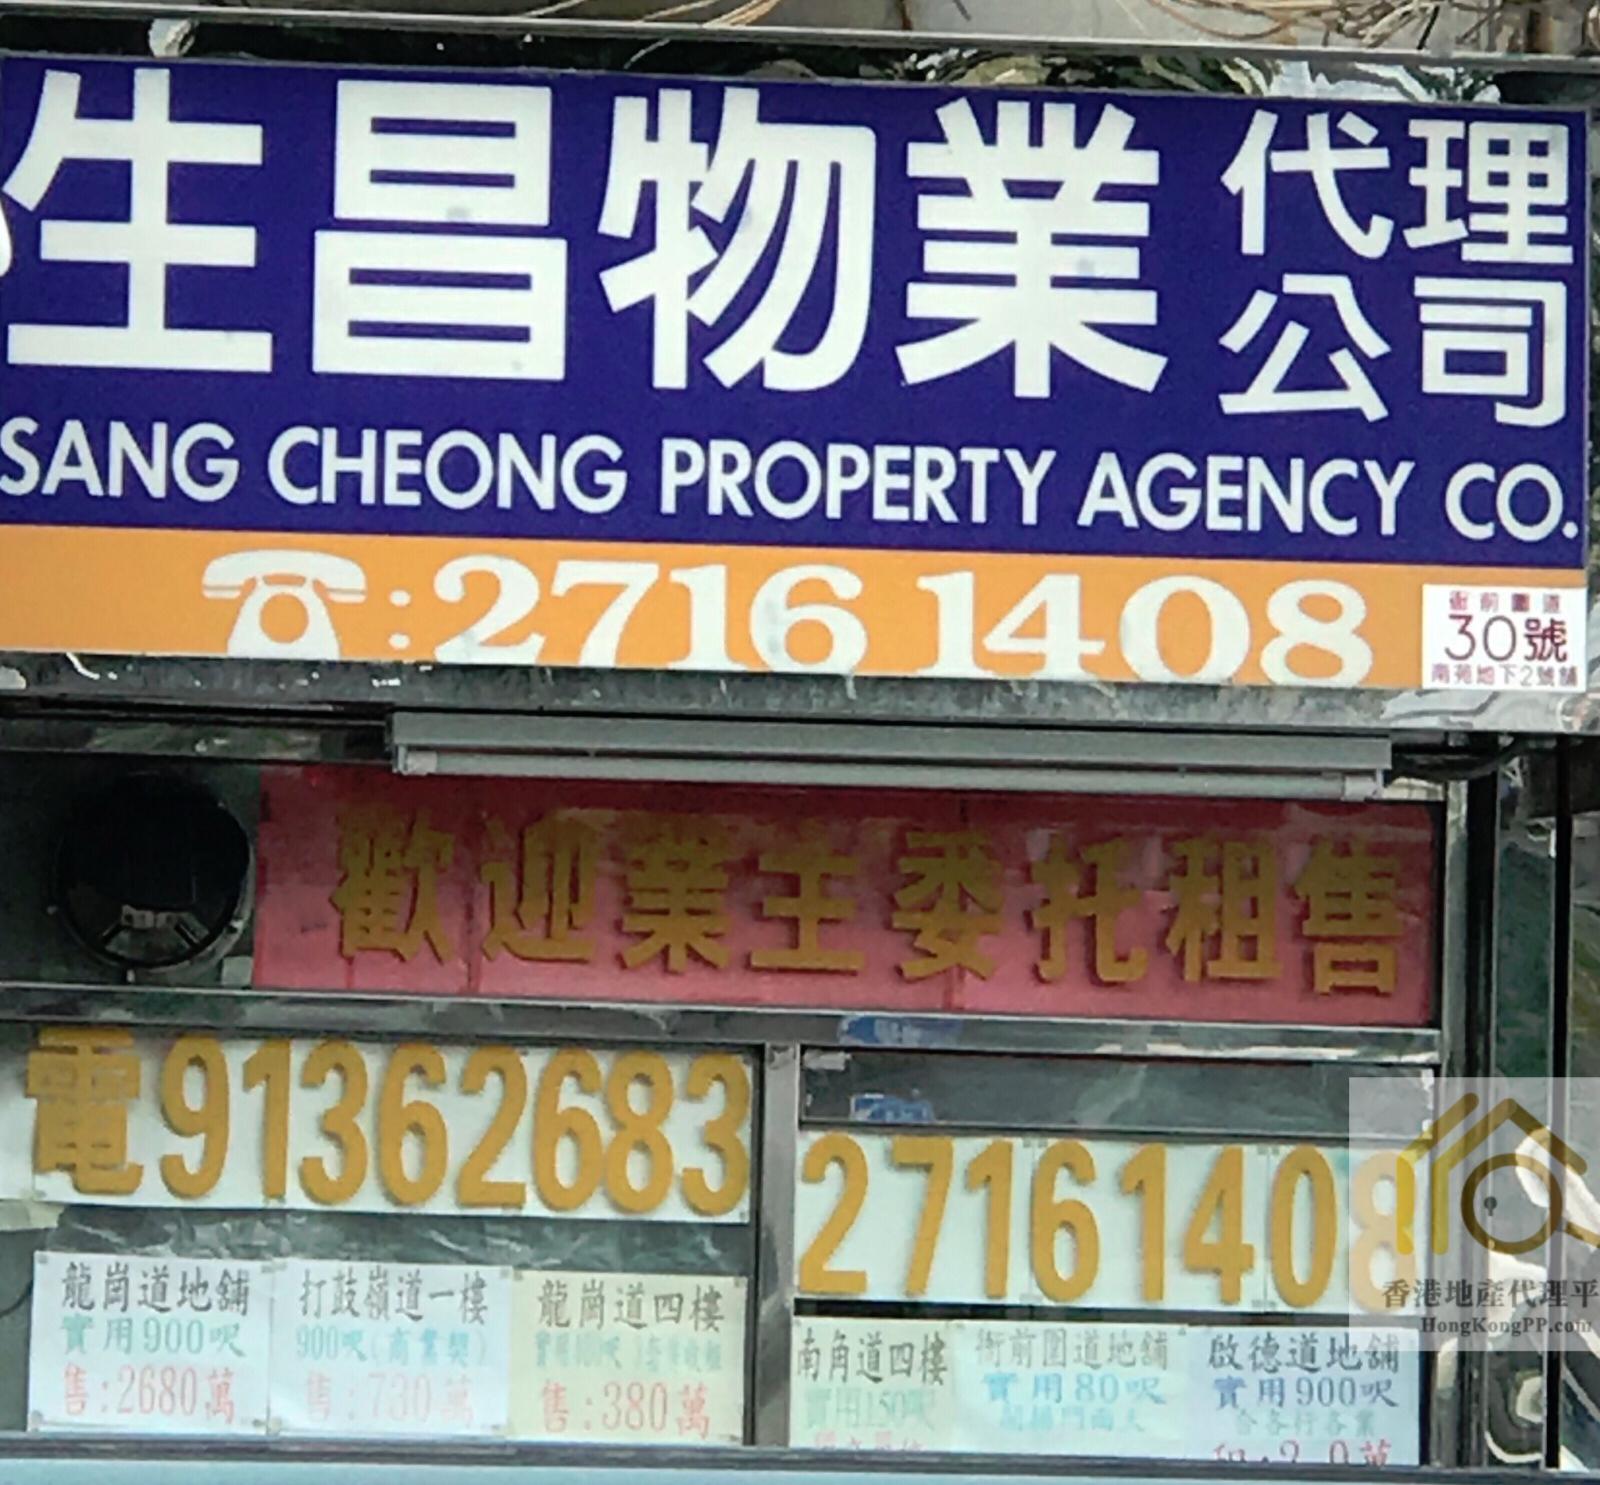 HousingEstate Agent: 生昌物業代理公司